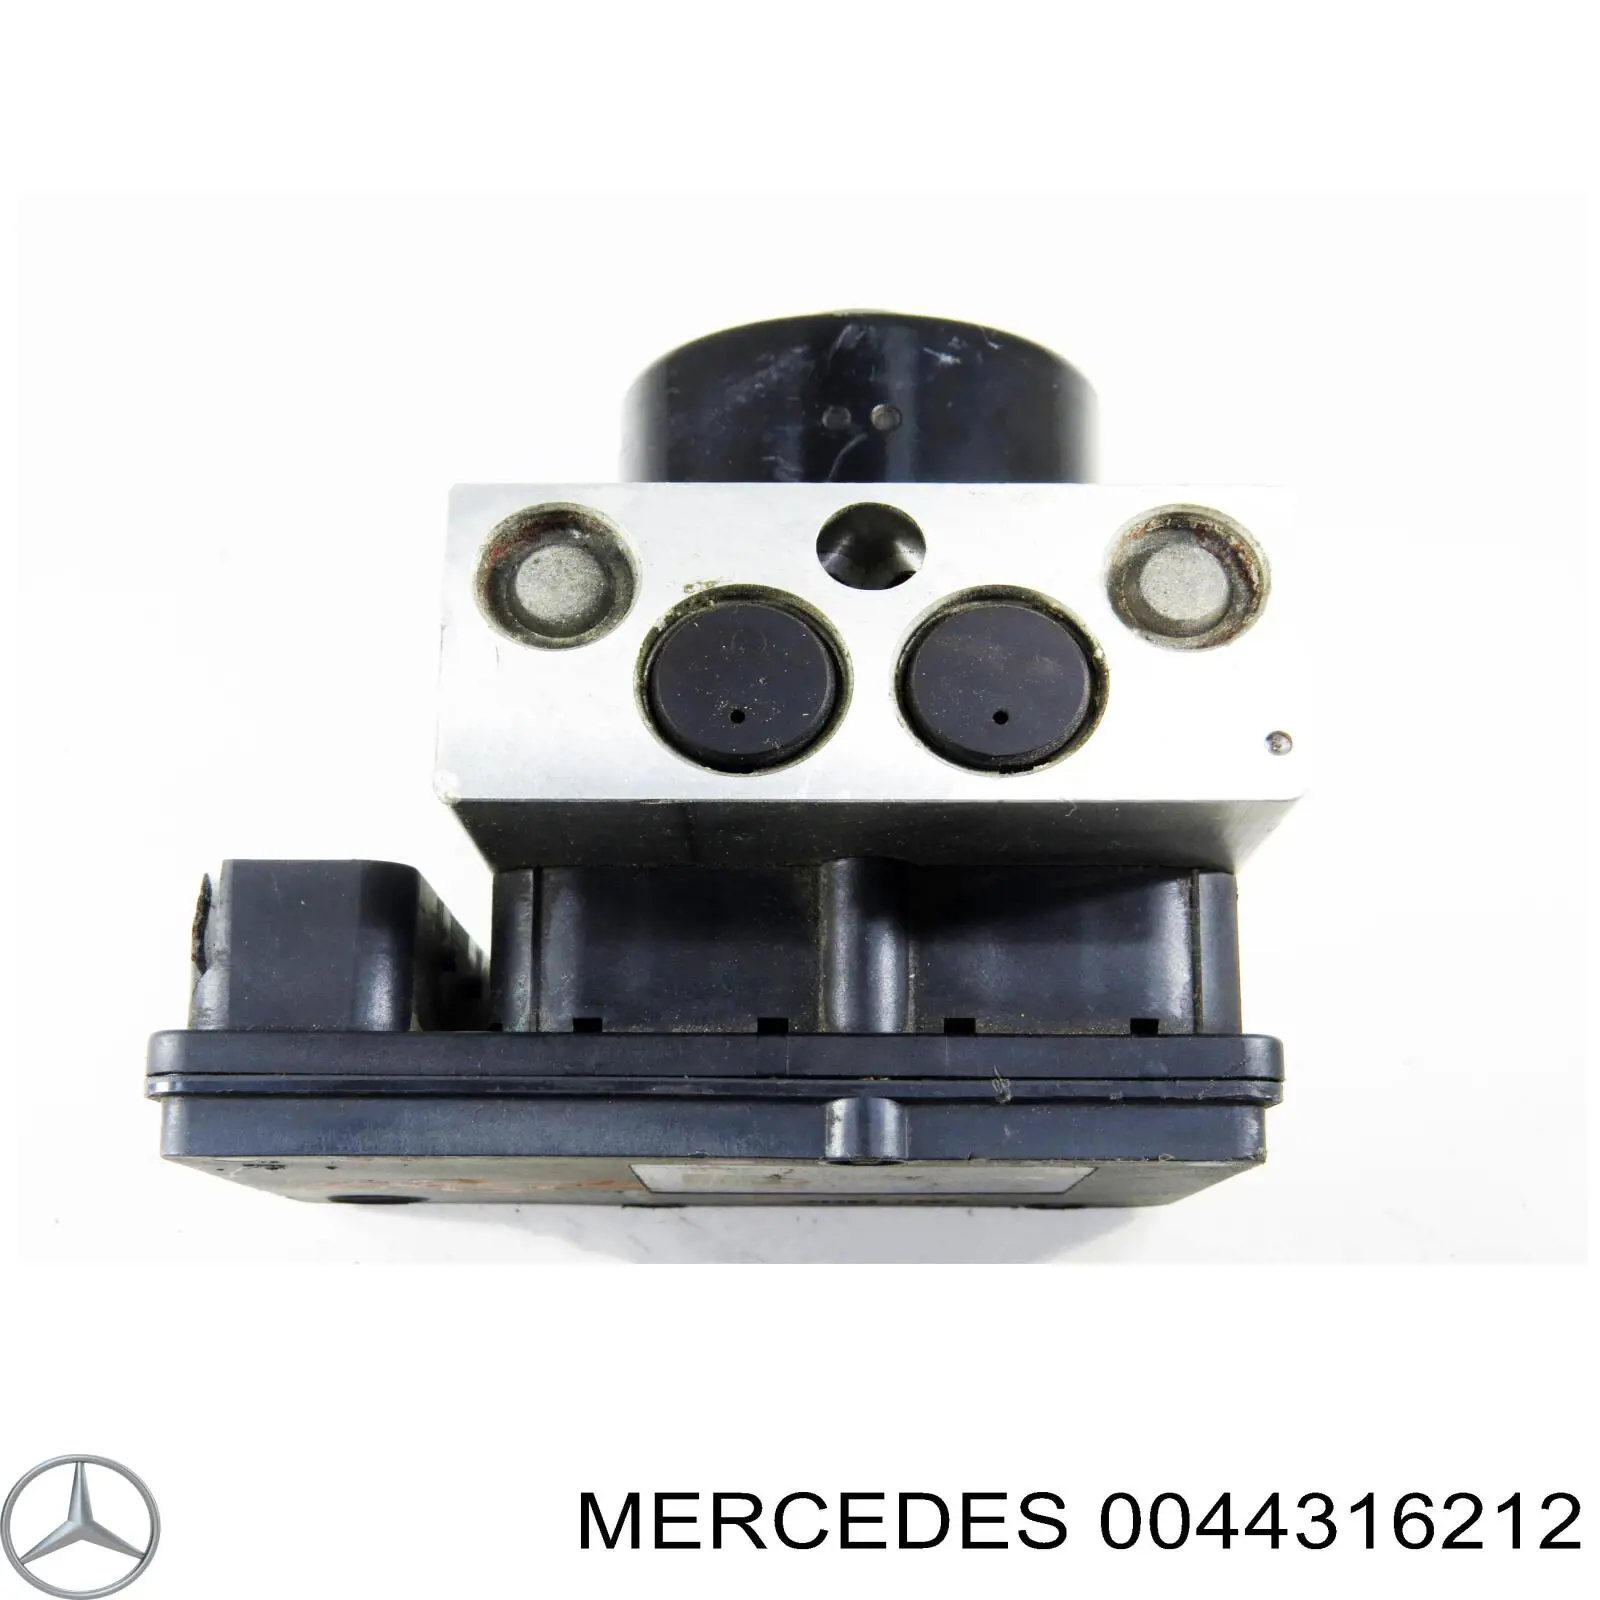 0044312512 Mercedes блок управления абс (abs гидравлический)